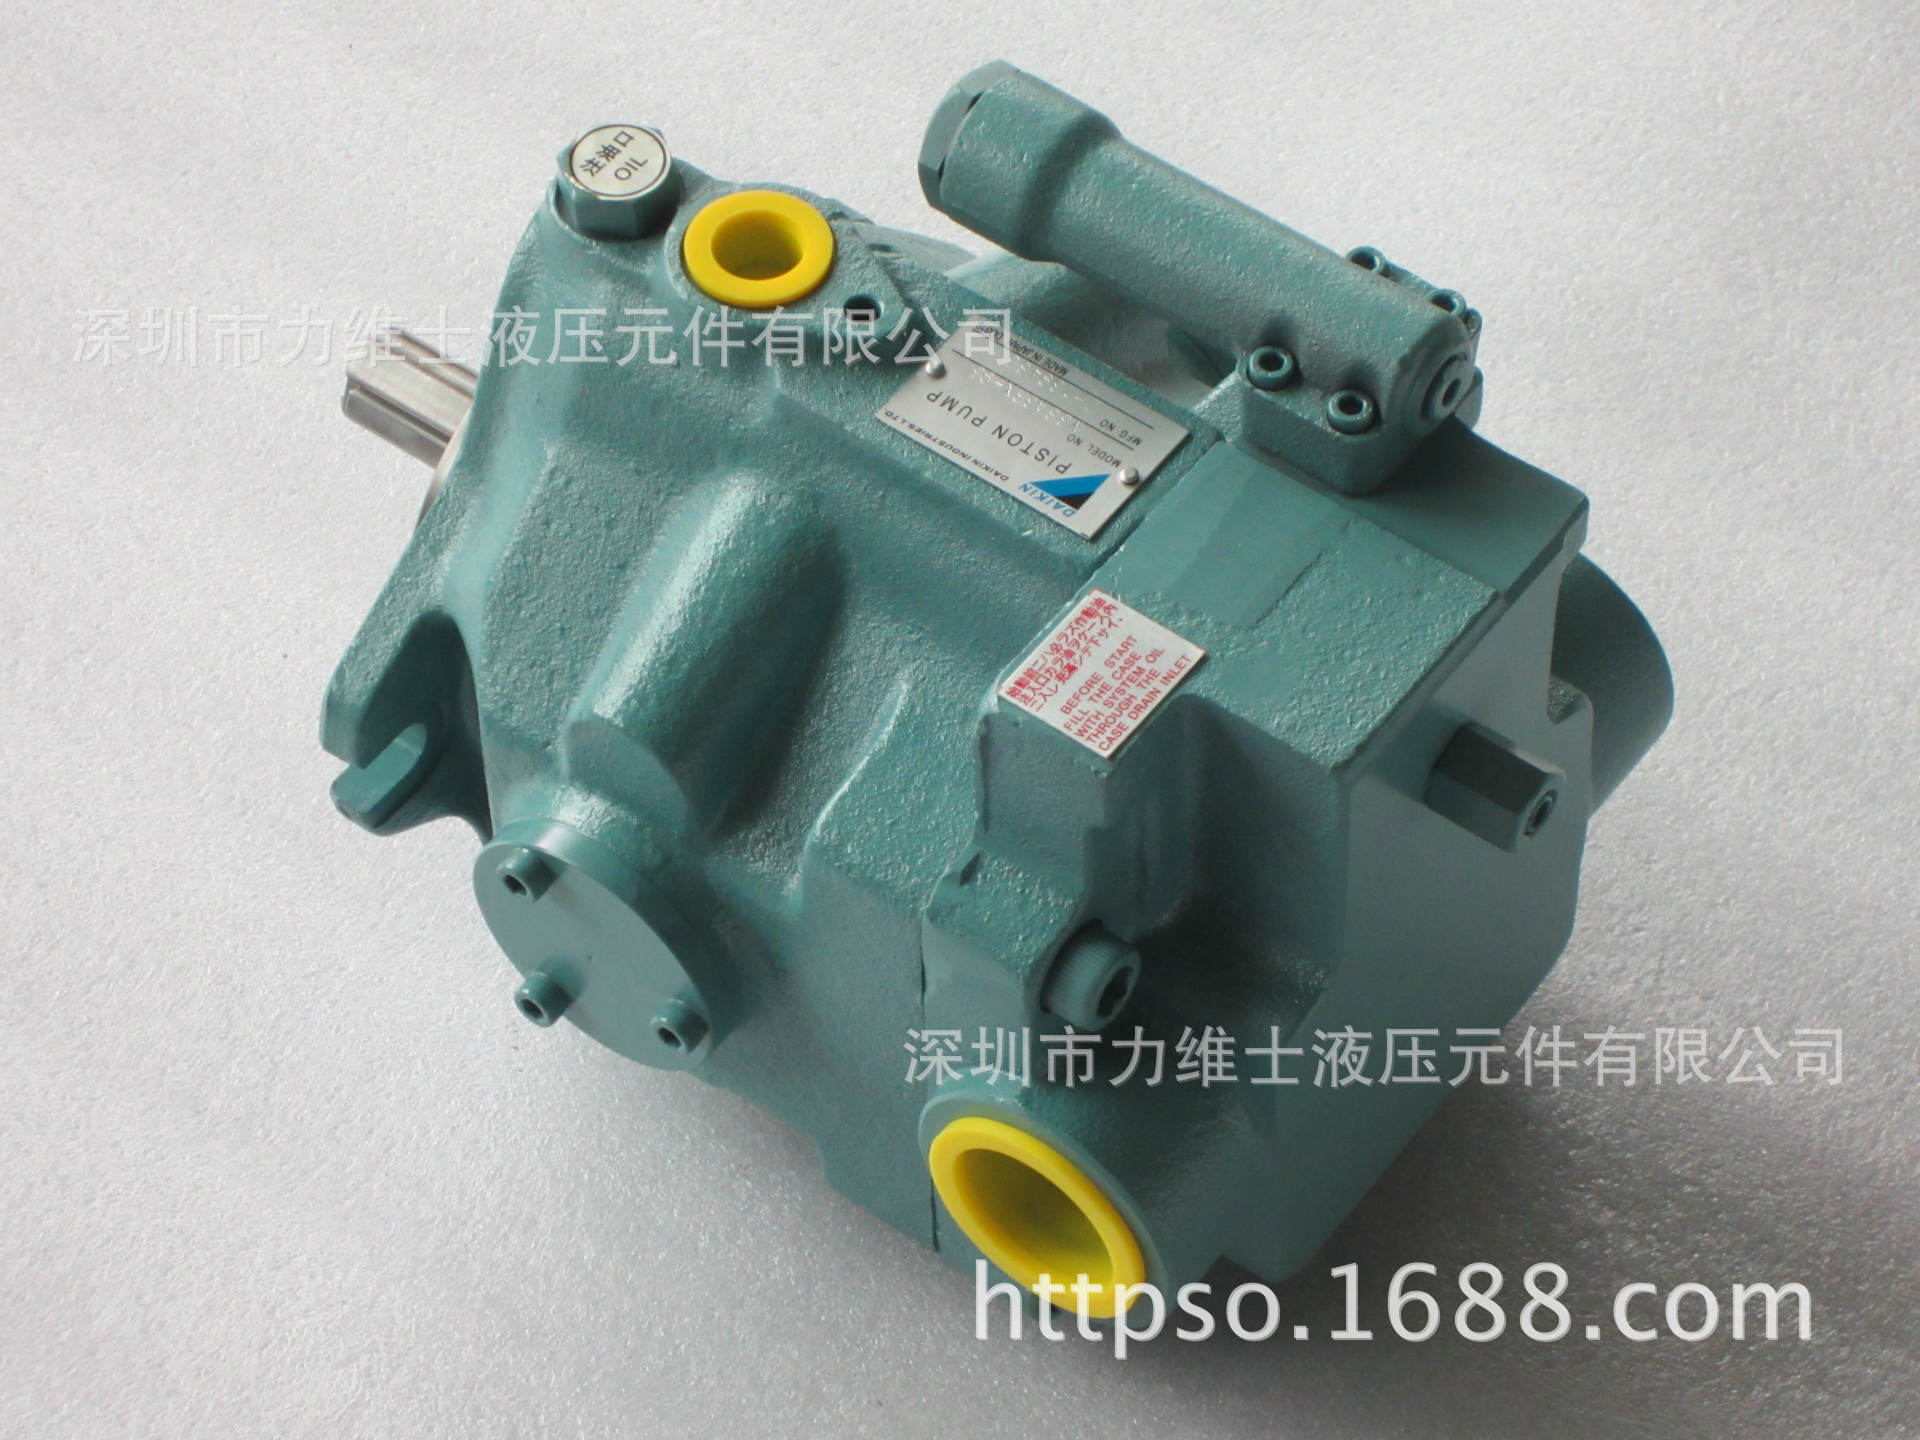 现货供应日本大金高压泵 V38A3RX-95系列大金变量柱塞泵